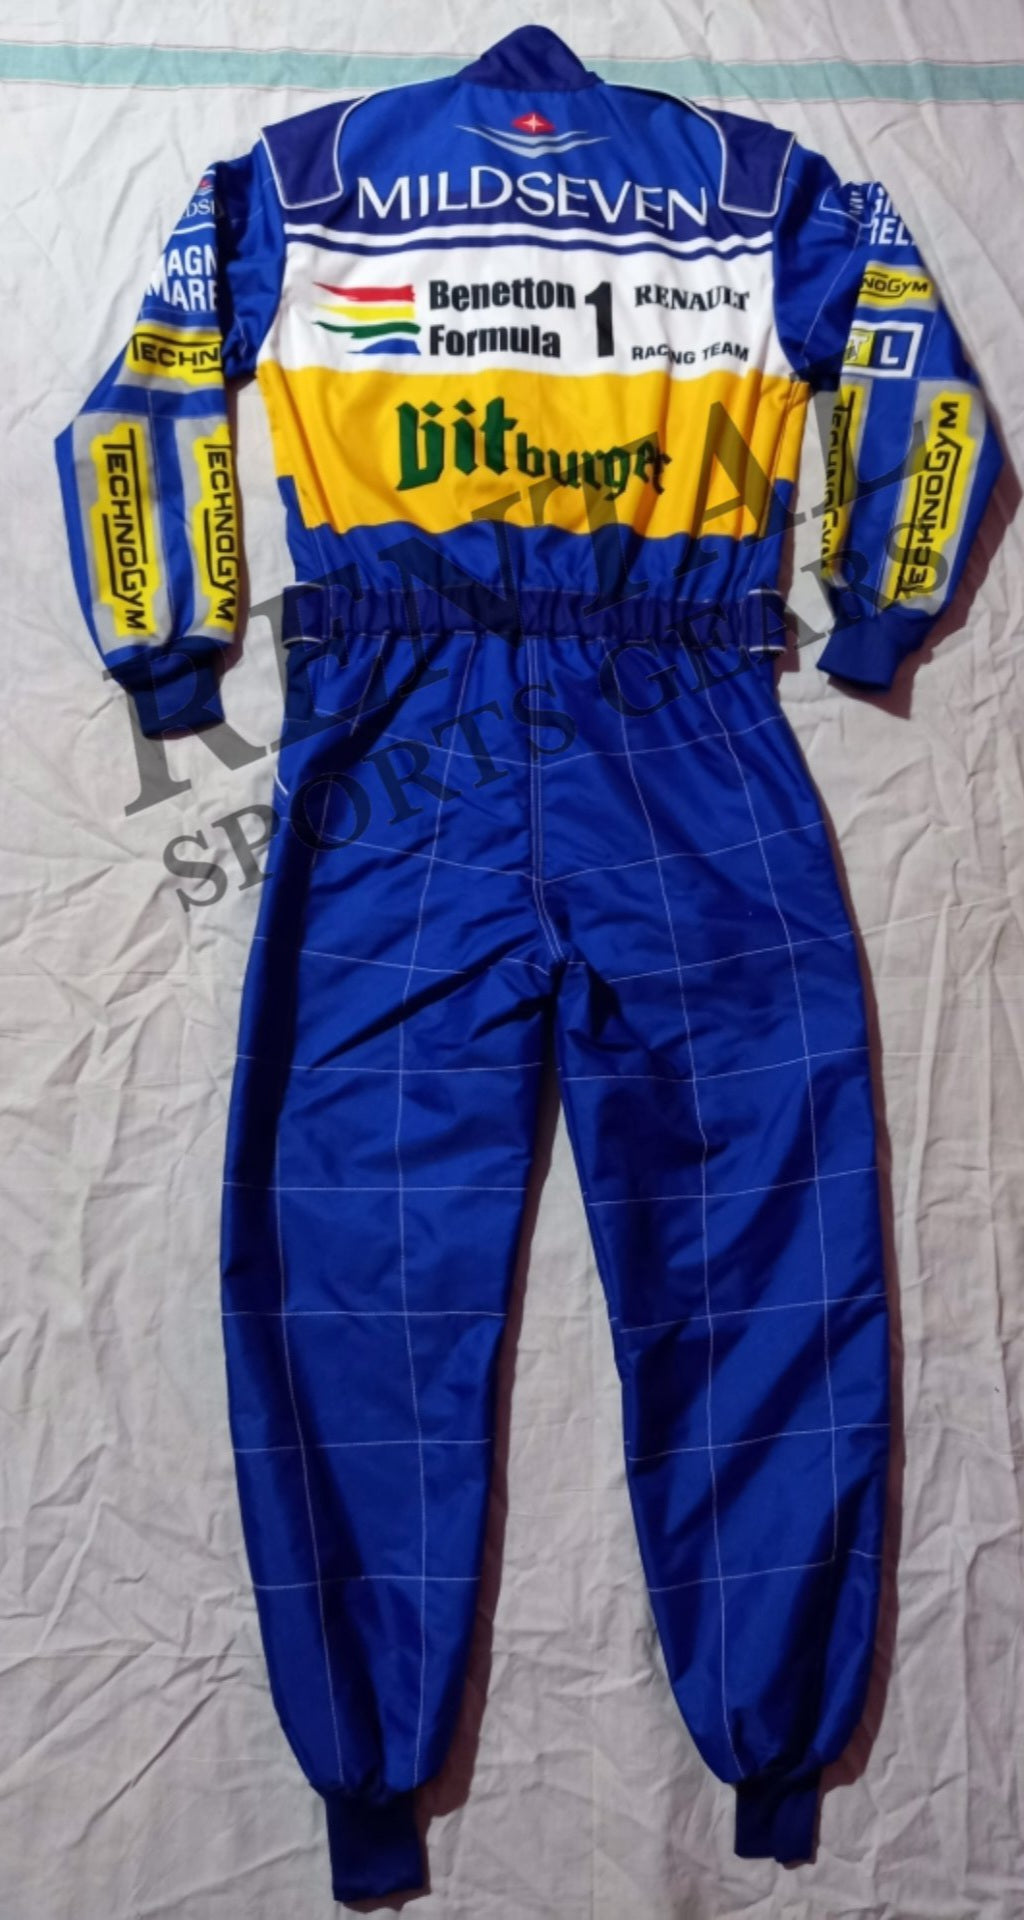 Michael Schumacher BitBurger 1995 Race Suit - f1 race suit